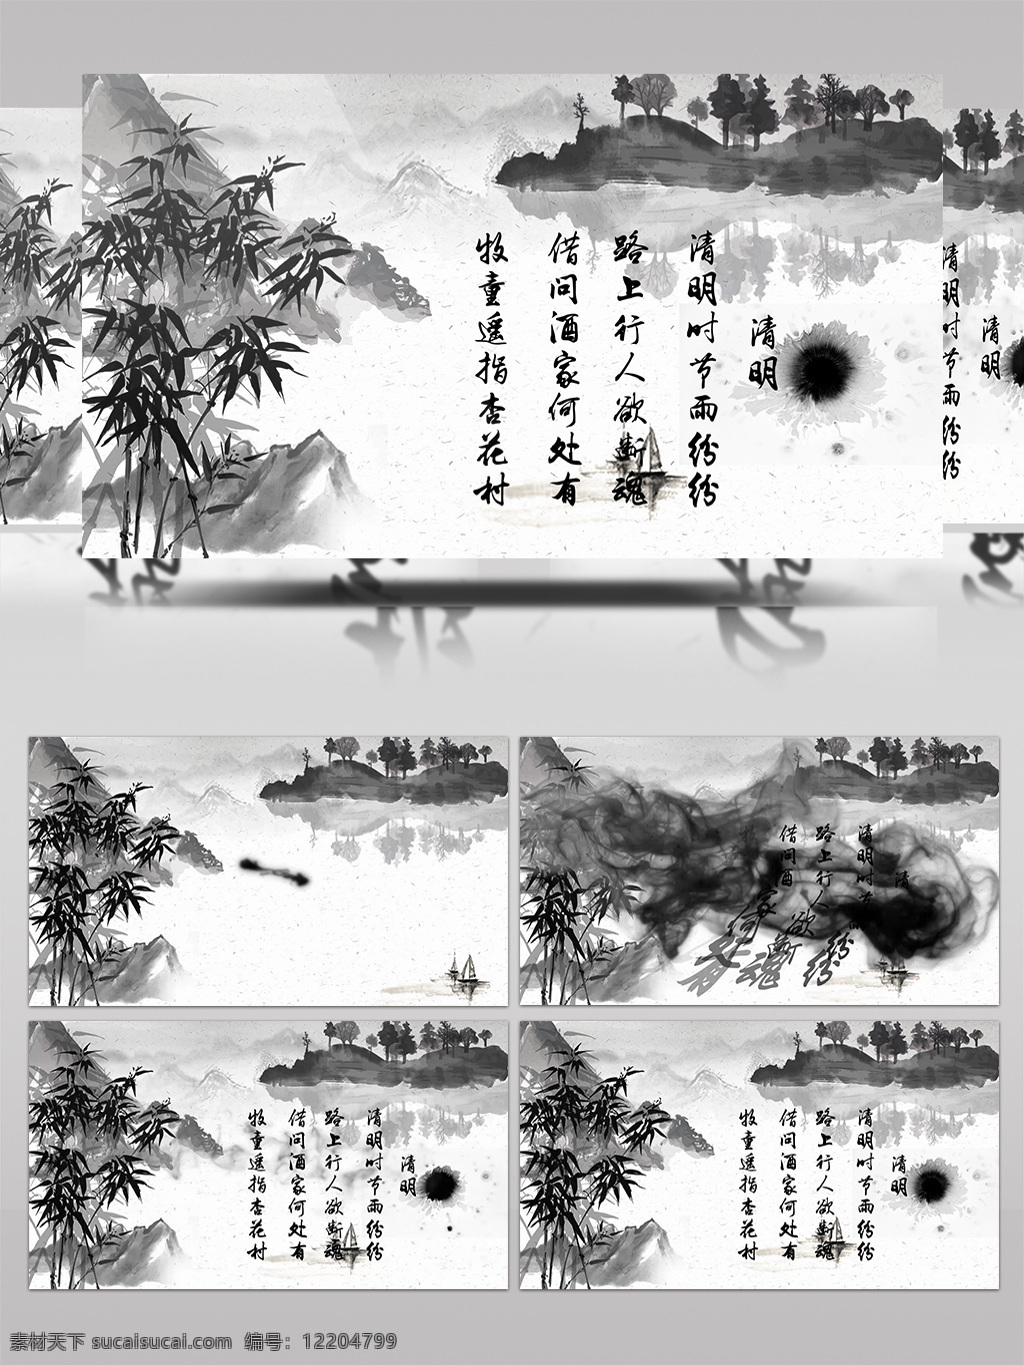 中国 传统 水墨 风格 诗词 展示 宣传 ae 模板 中国风 诗意 墨竹 竹子 aecc 诗情画意